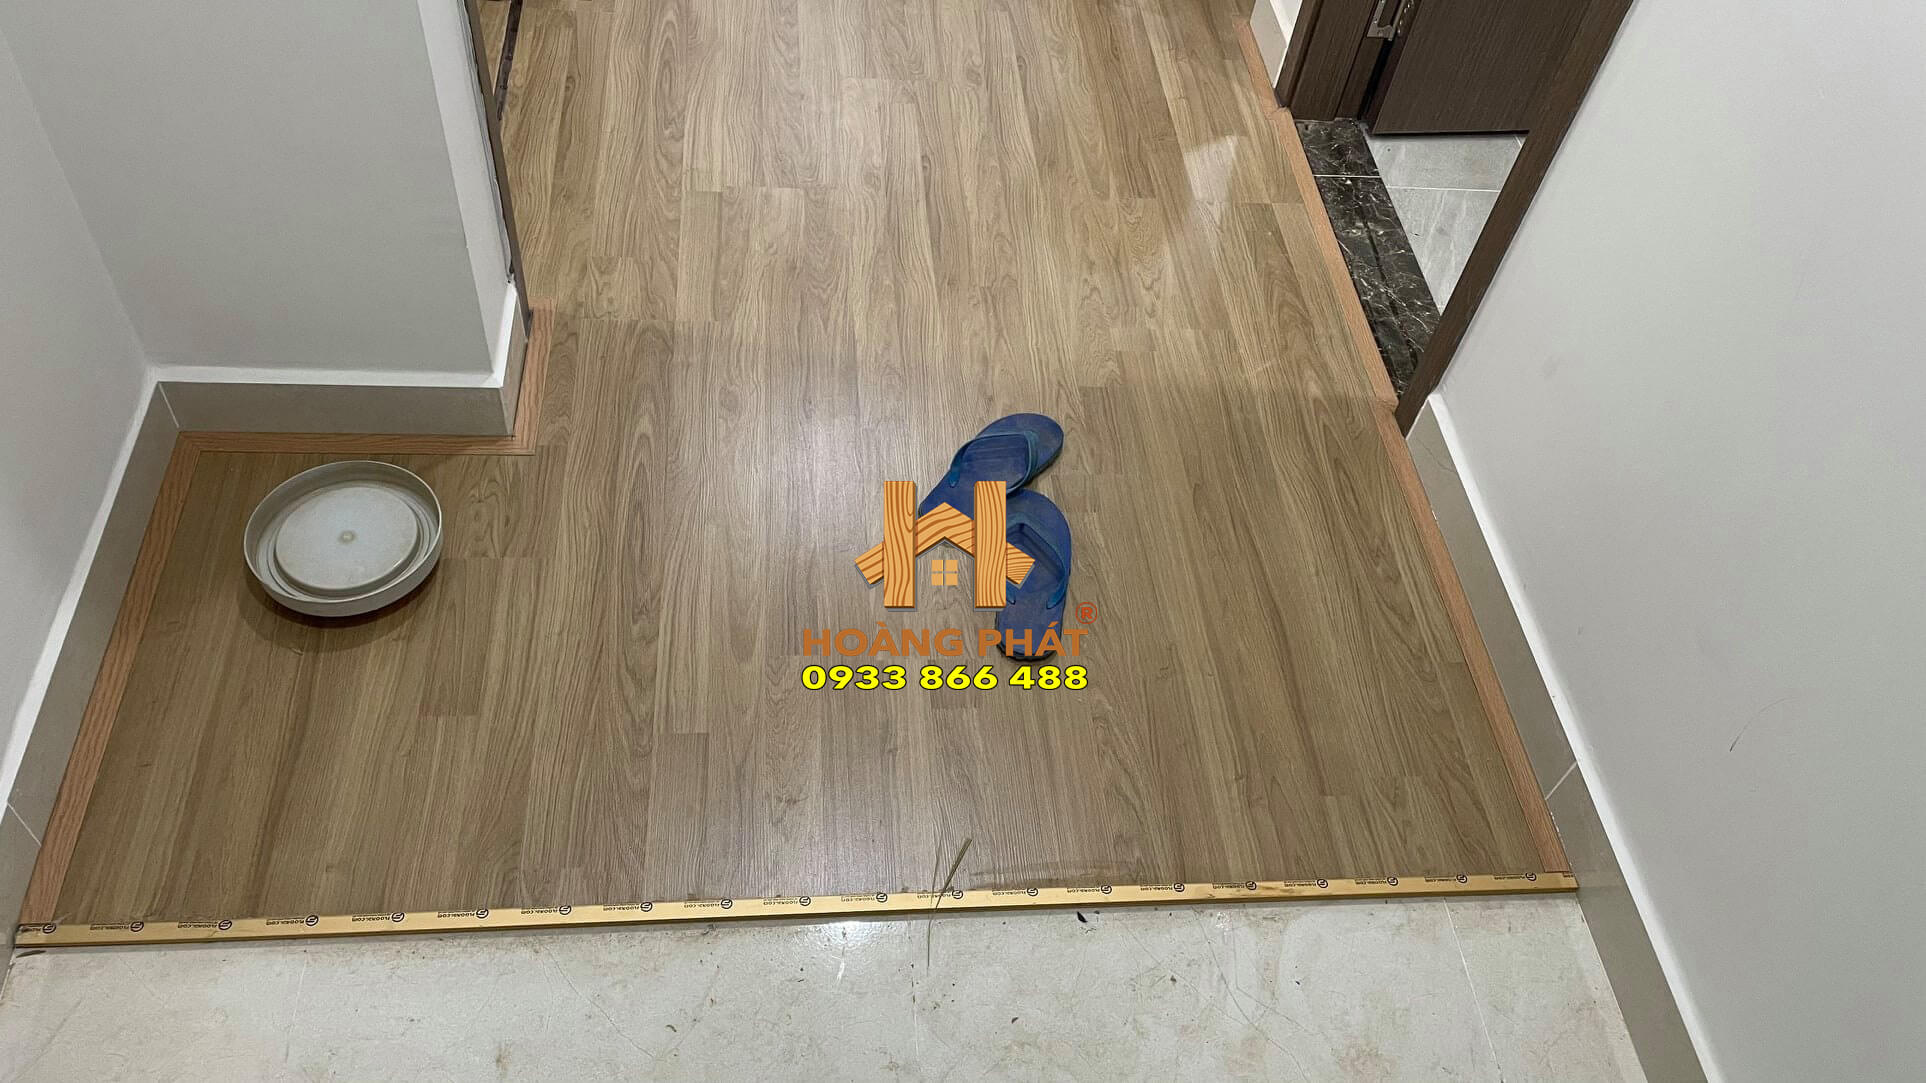 Sàn gỗ Dongwha NT002